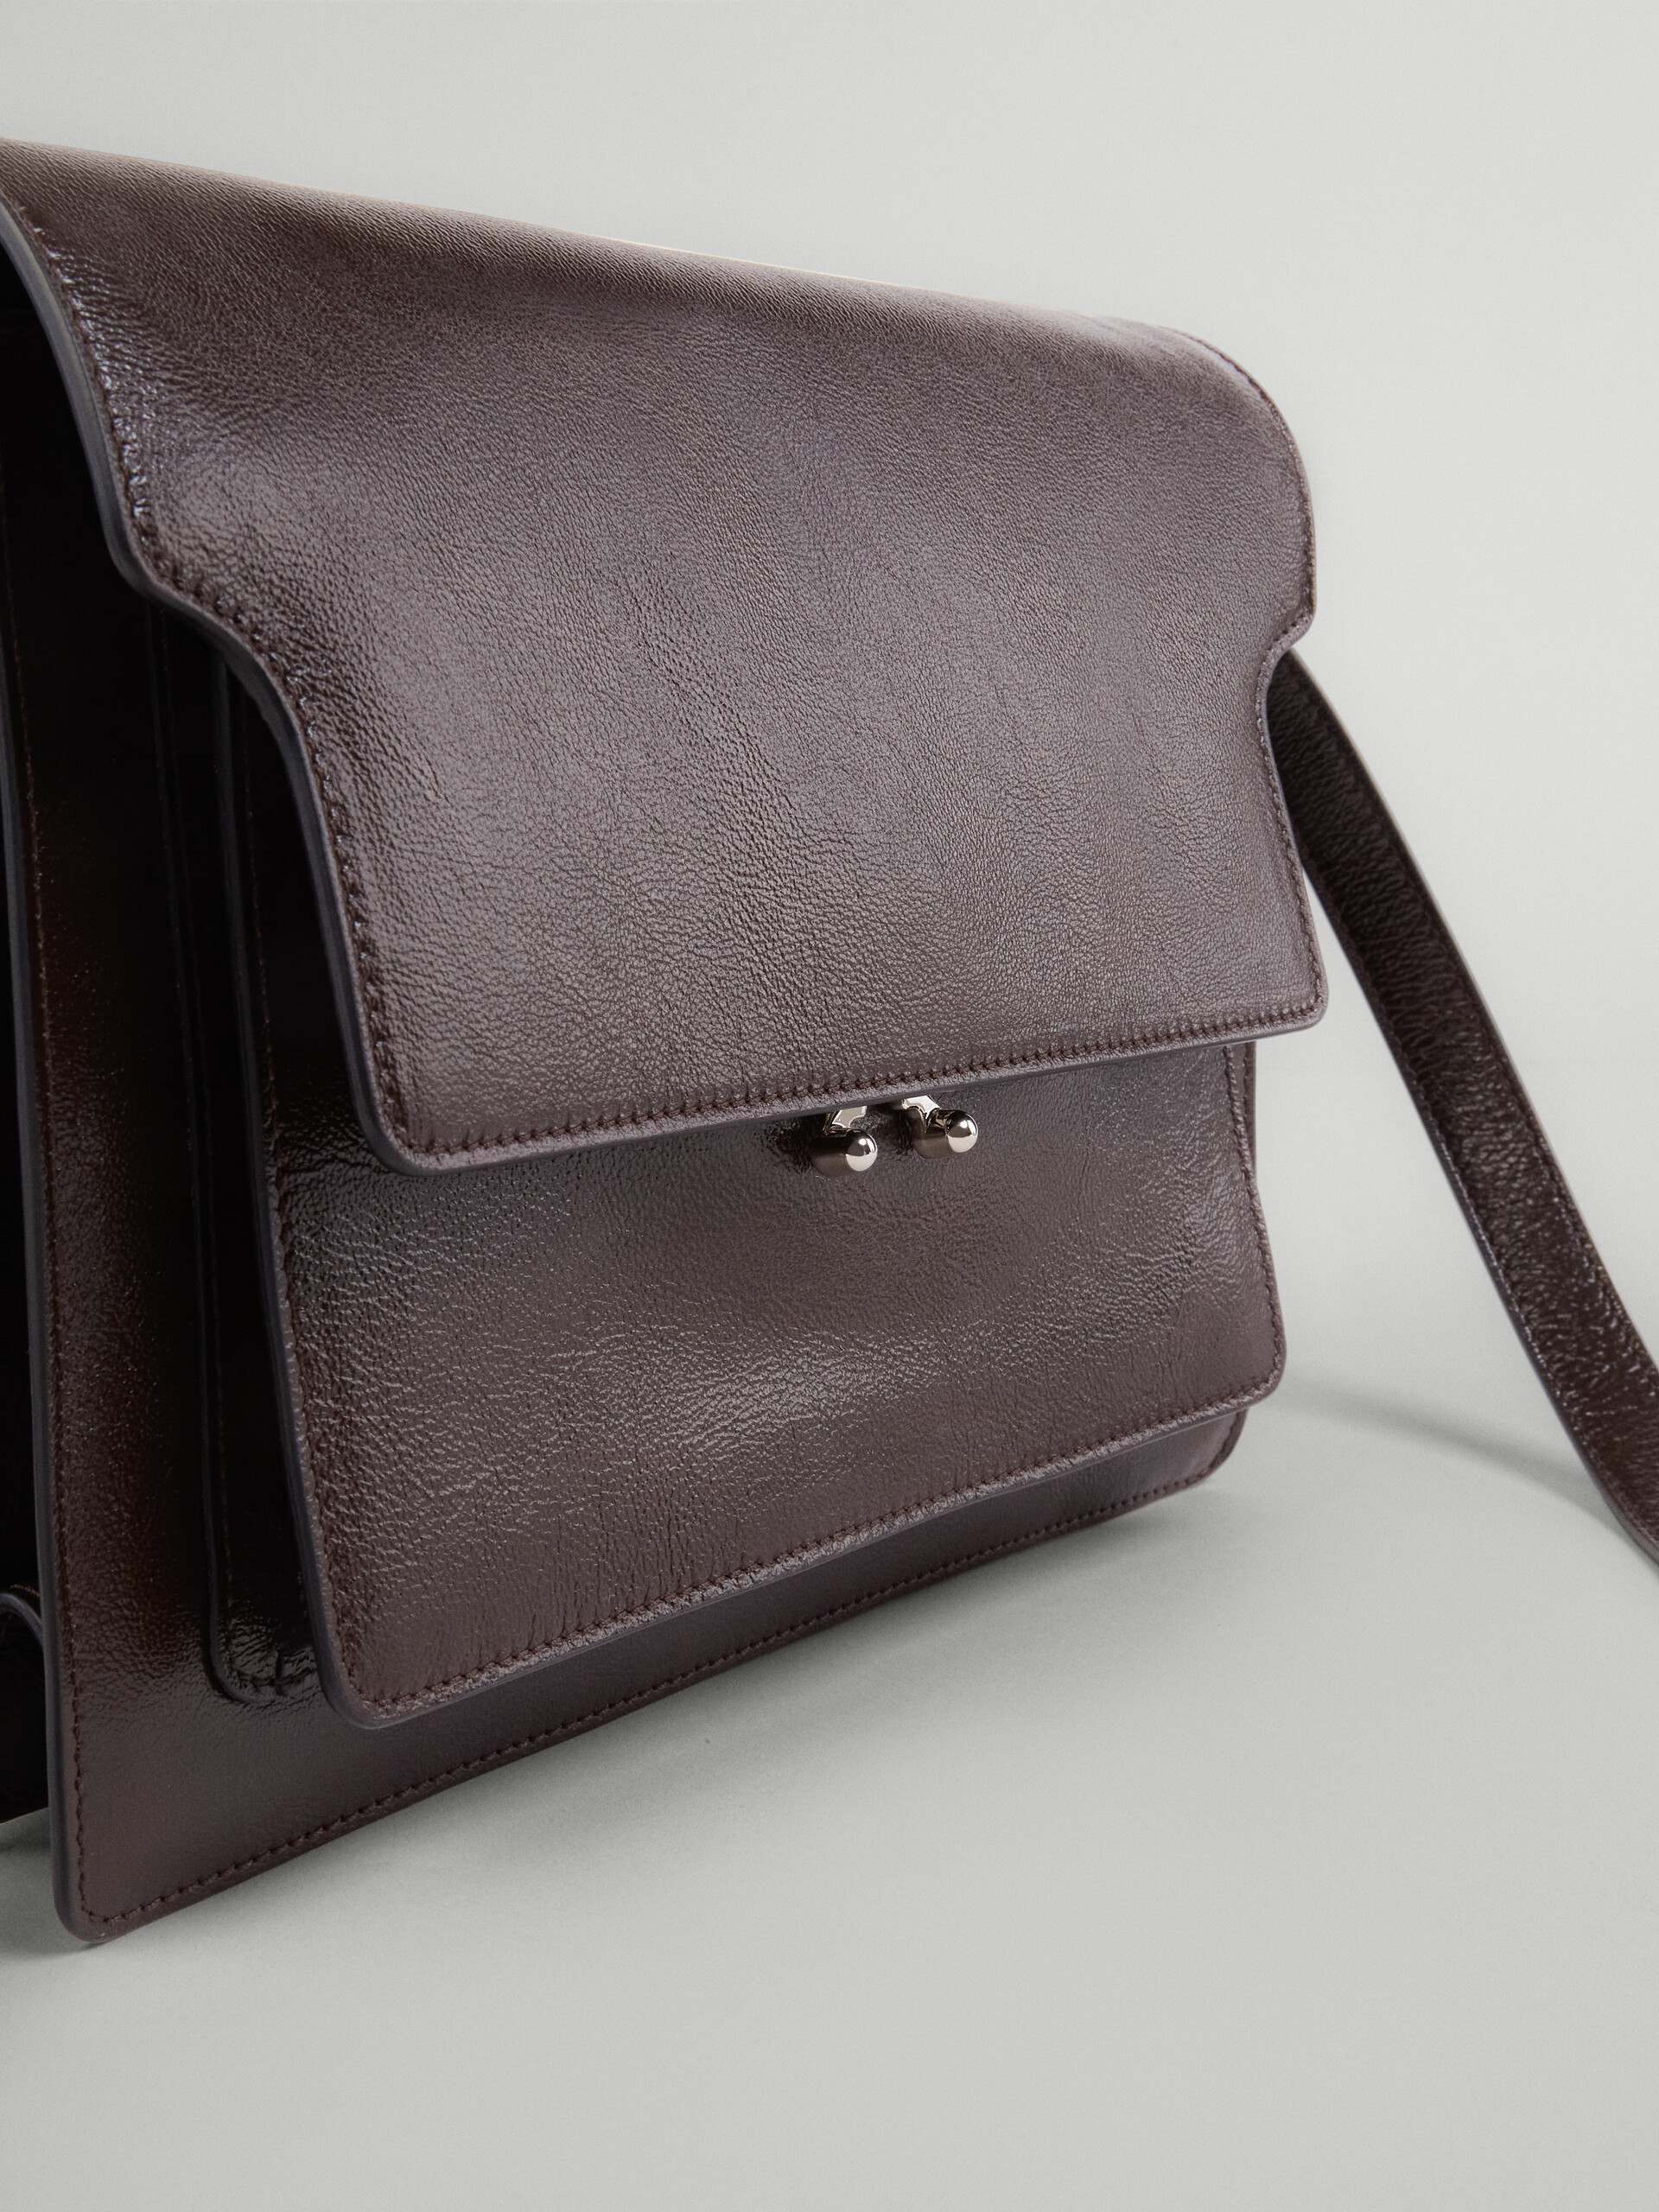 TRUNK SOFT large bag in brown leather - Shoulder Bag - Image 3